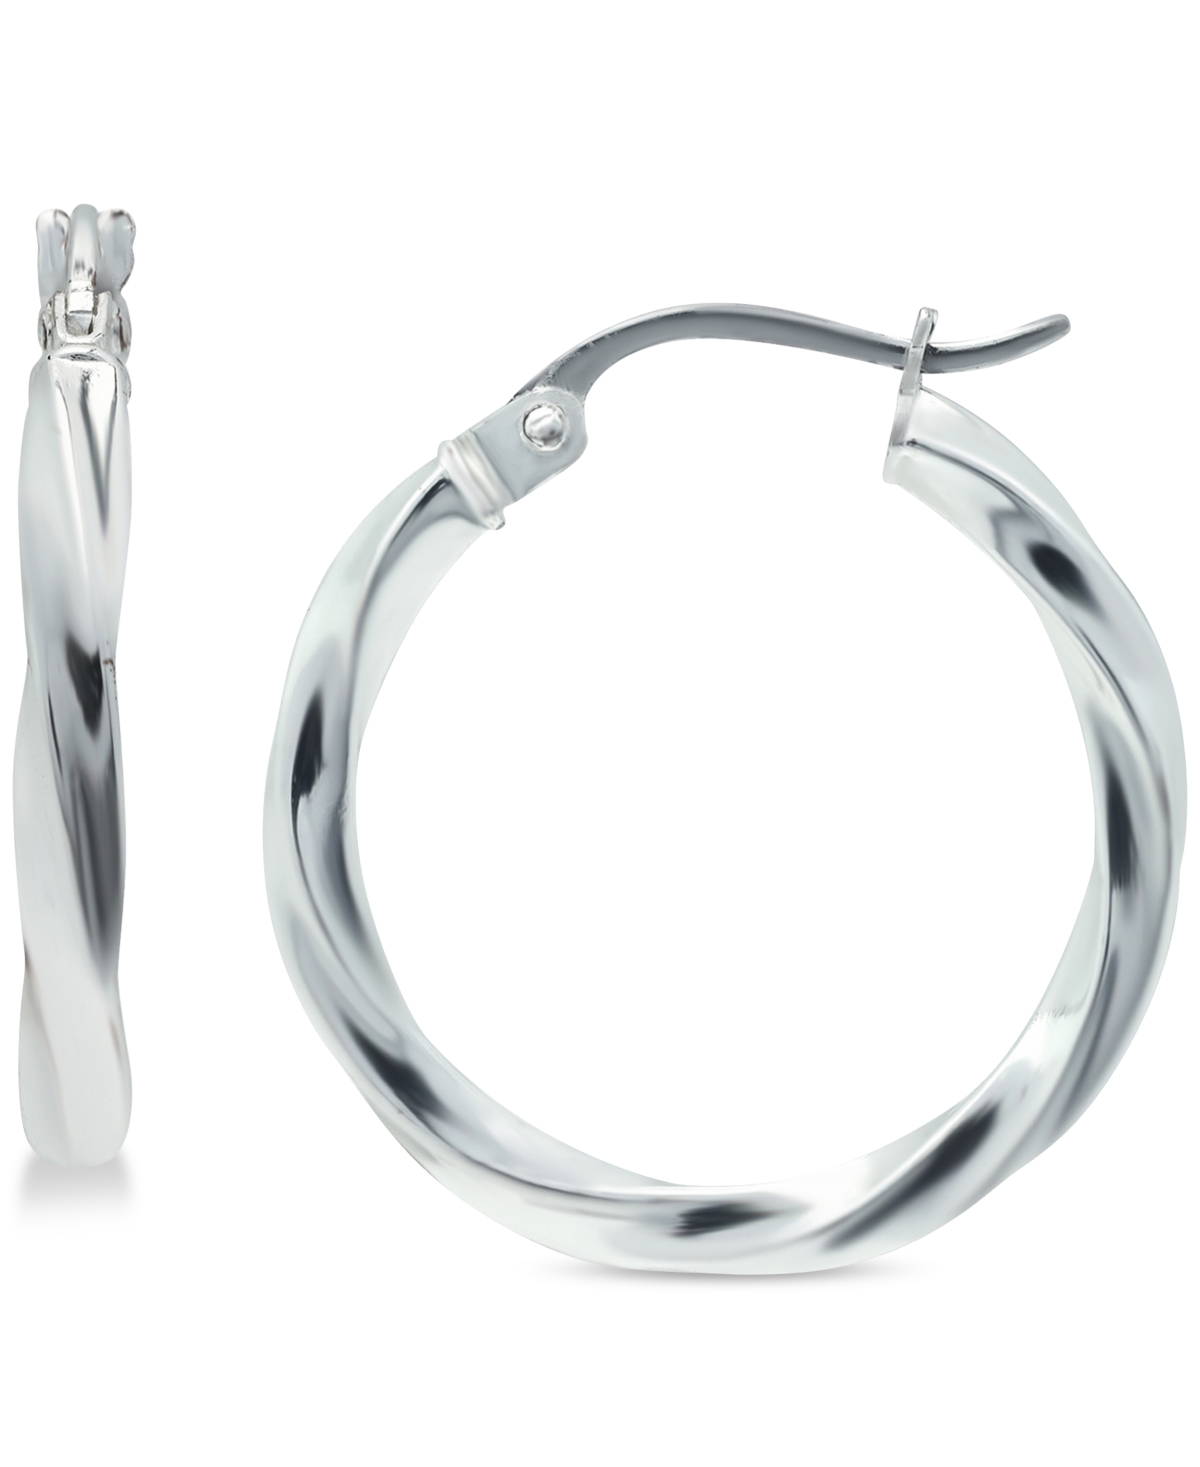 Twist Hoop Earrings in Sterling Silver, Created for Macy's - Silver